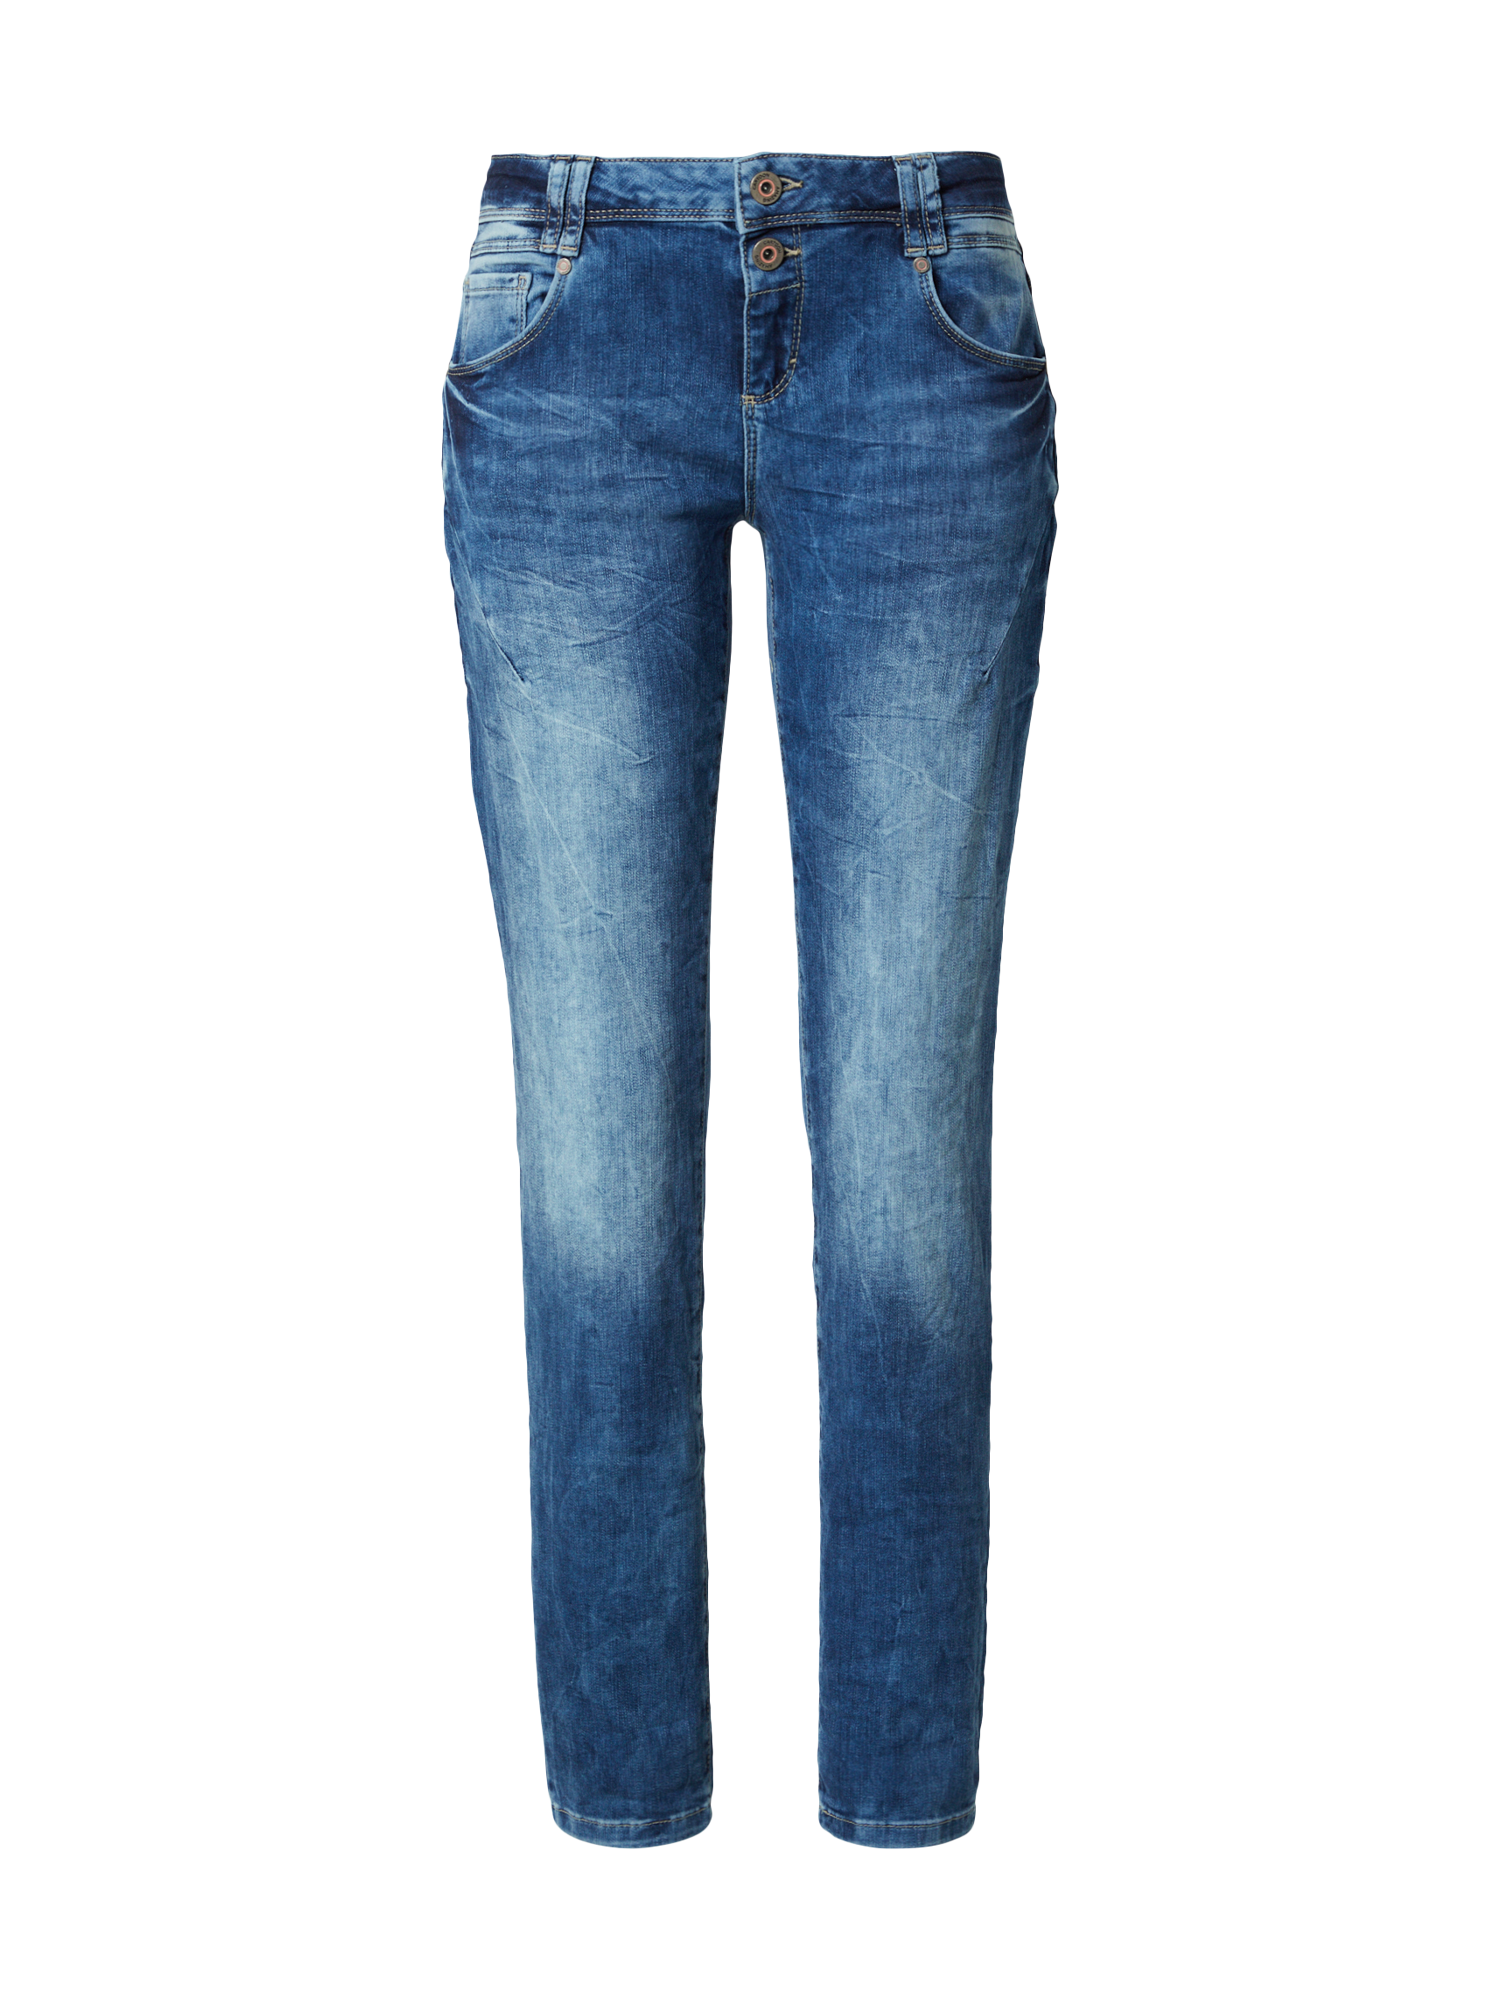 Abbigliamento r0wTB Cartoon Jeans in Blu Scuro 